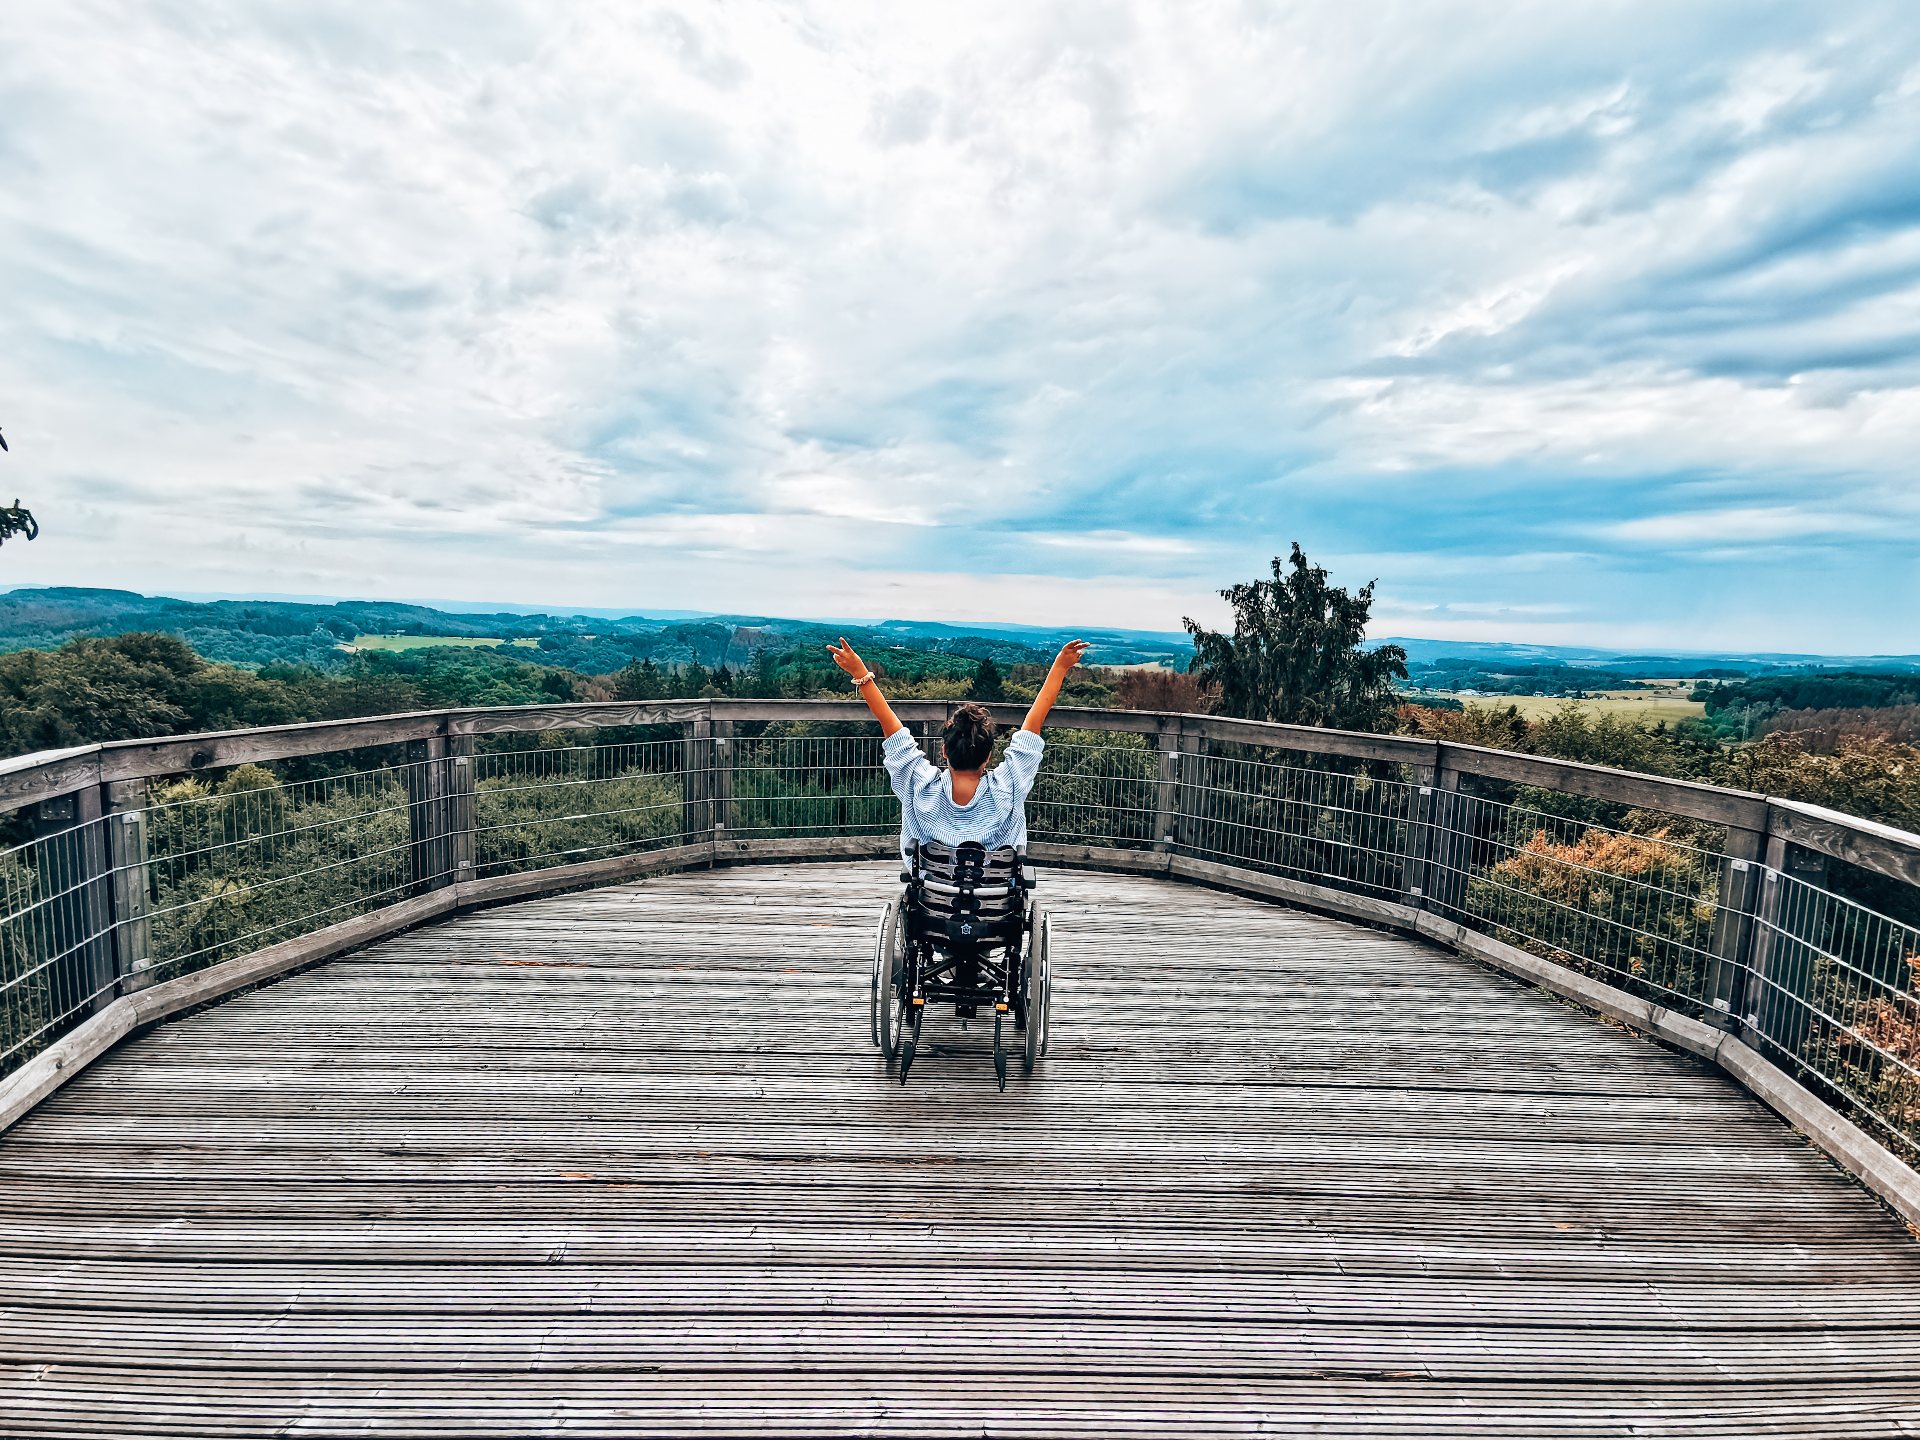 Eine Rollstuhlfahrerin schaut von der Aussichtsplattform des Baumwipfelpfads Panabora auf die grünen Hügel im Bergischen Land und recht die Arme in die Höhe.  